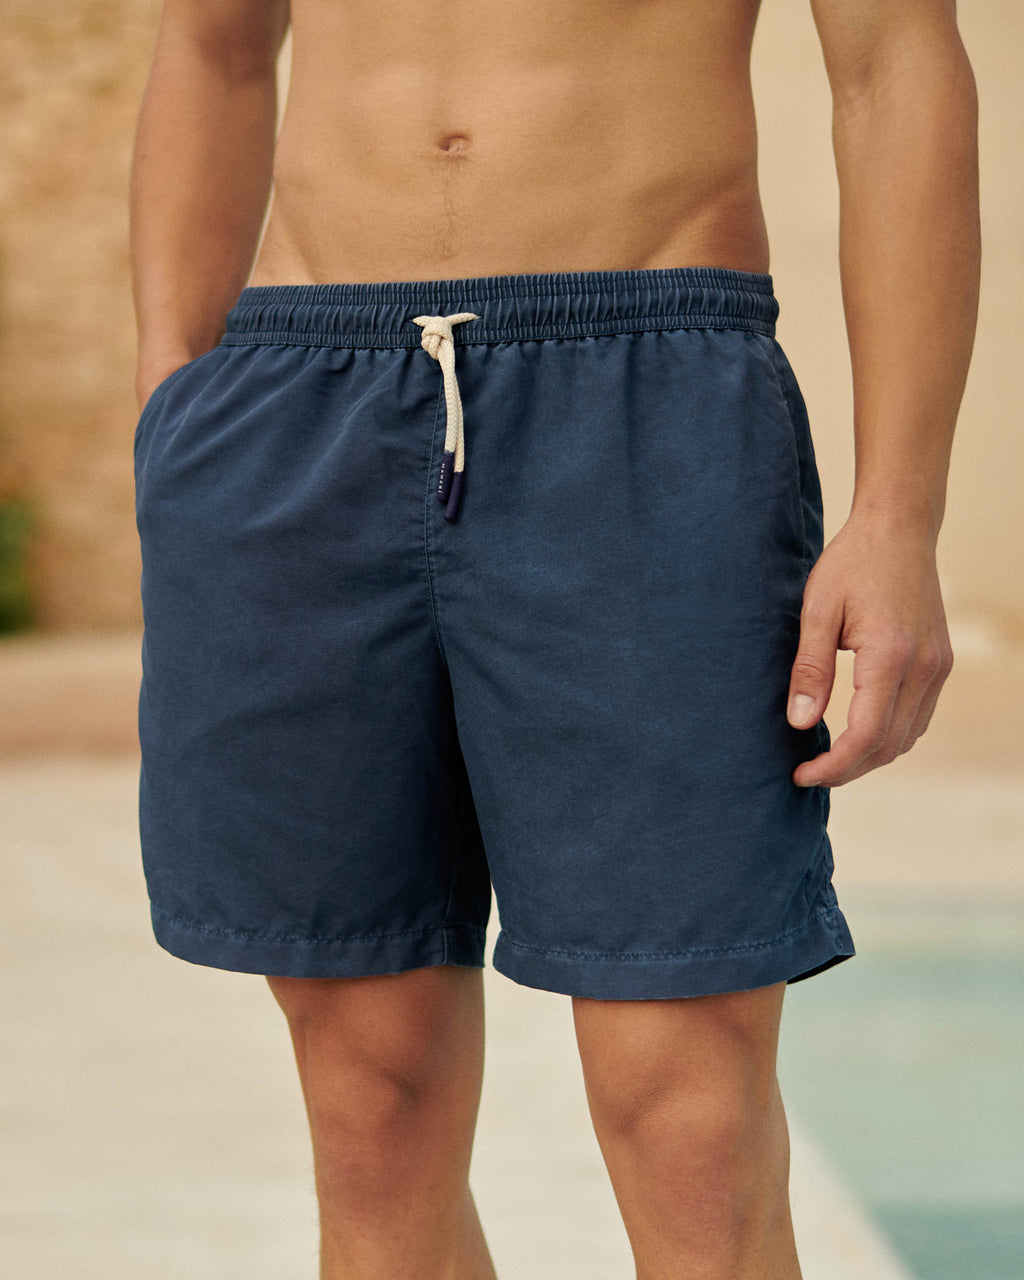 Swim Shorts - Stone Washed Nylon - Faded Navy Blue